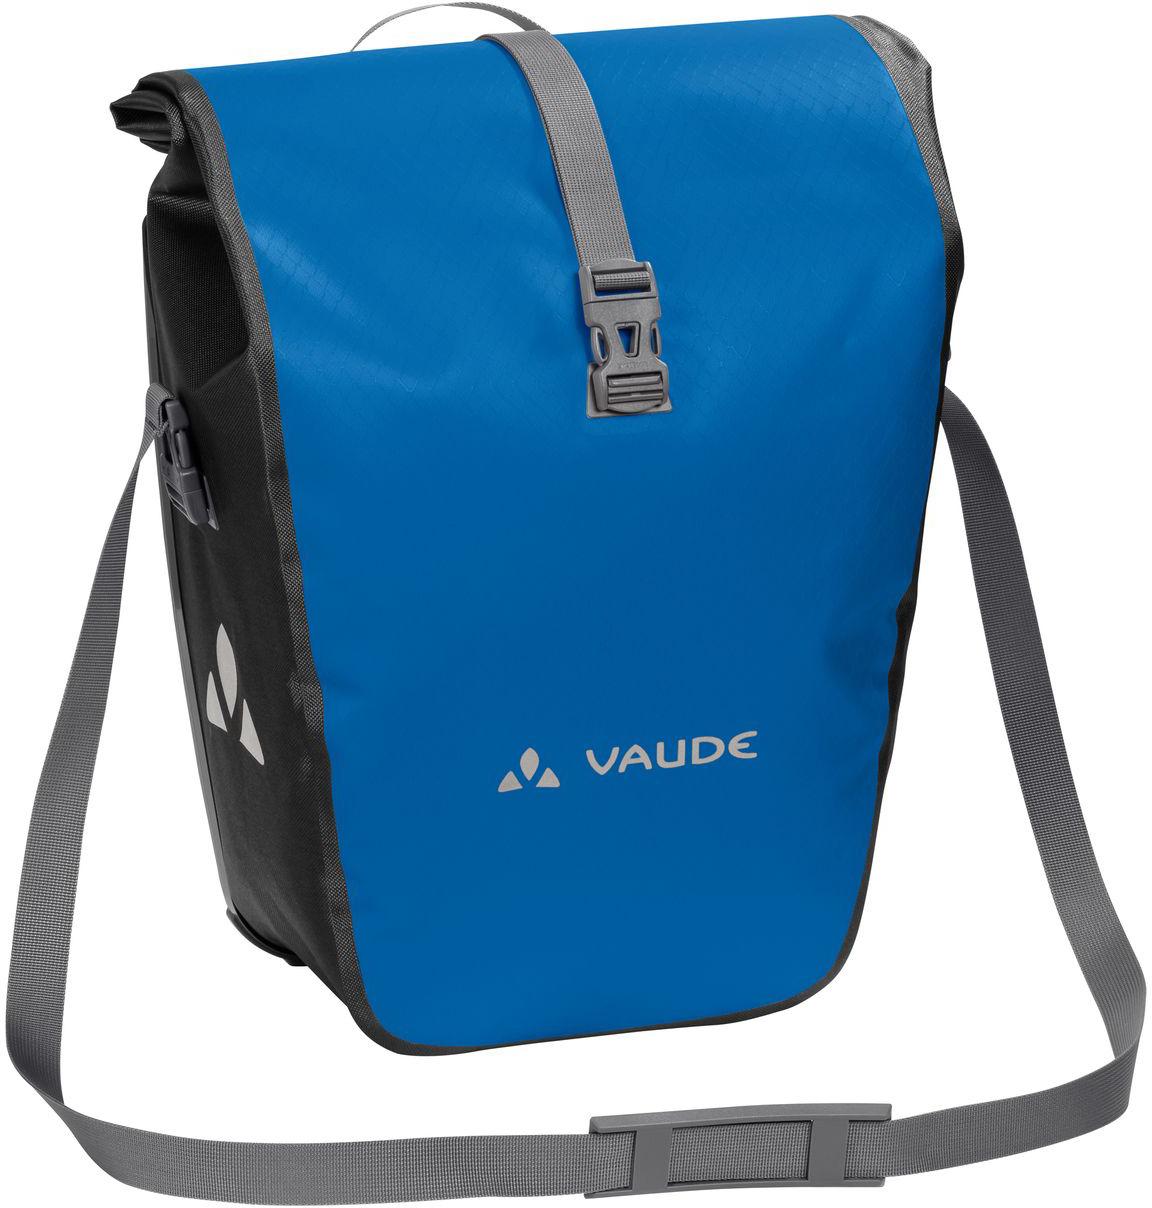 Vaude Aqua Back Pannier Bag Blue - Pack Of 2